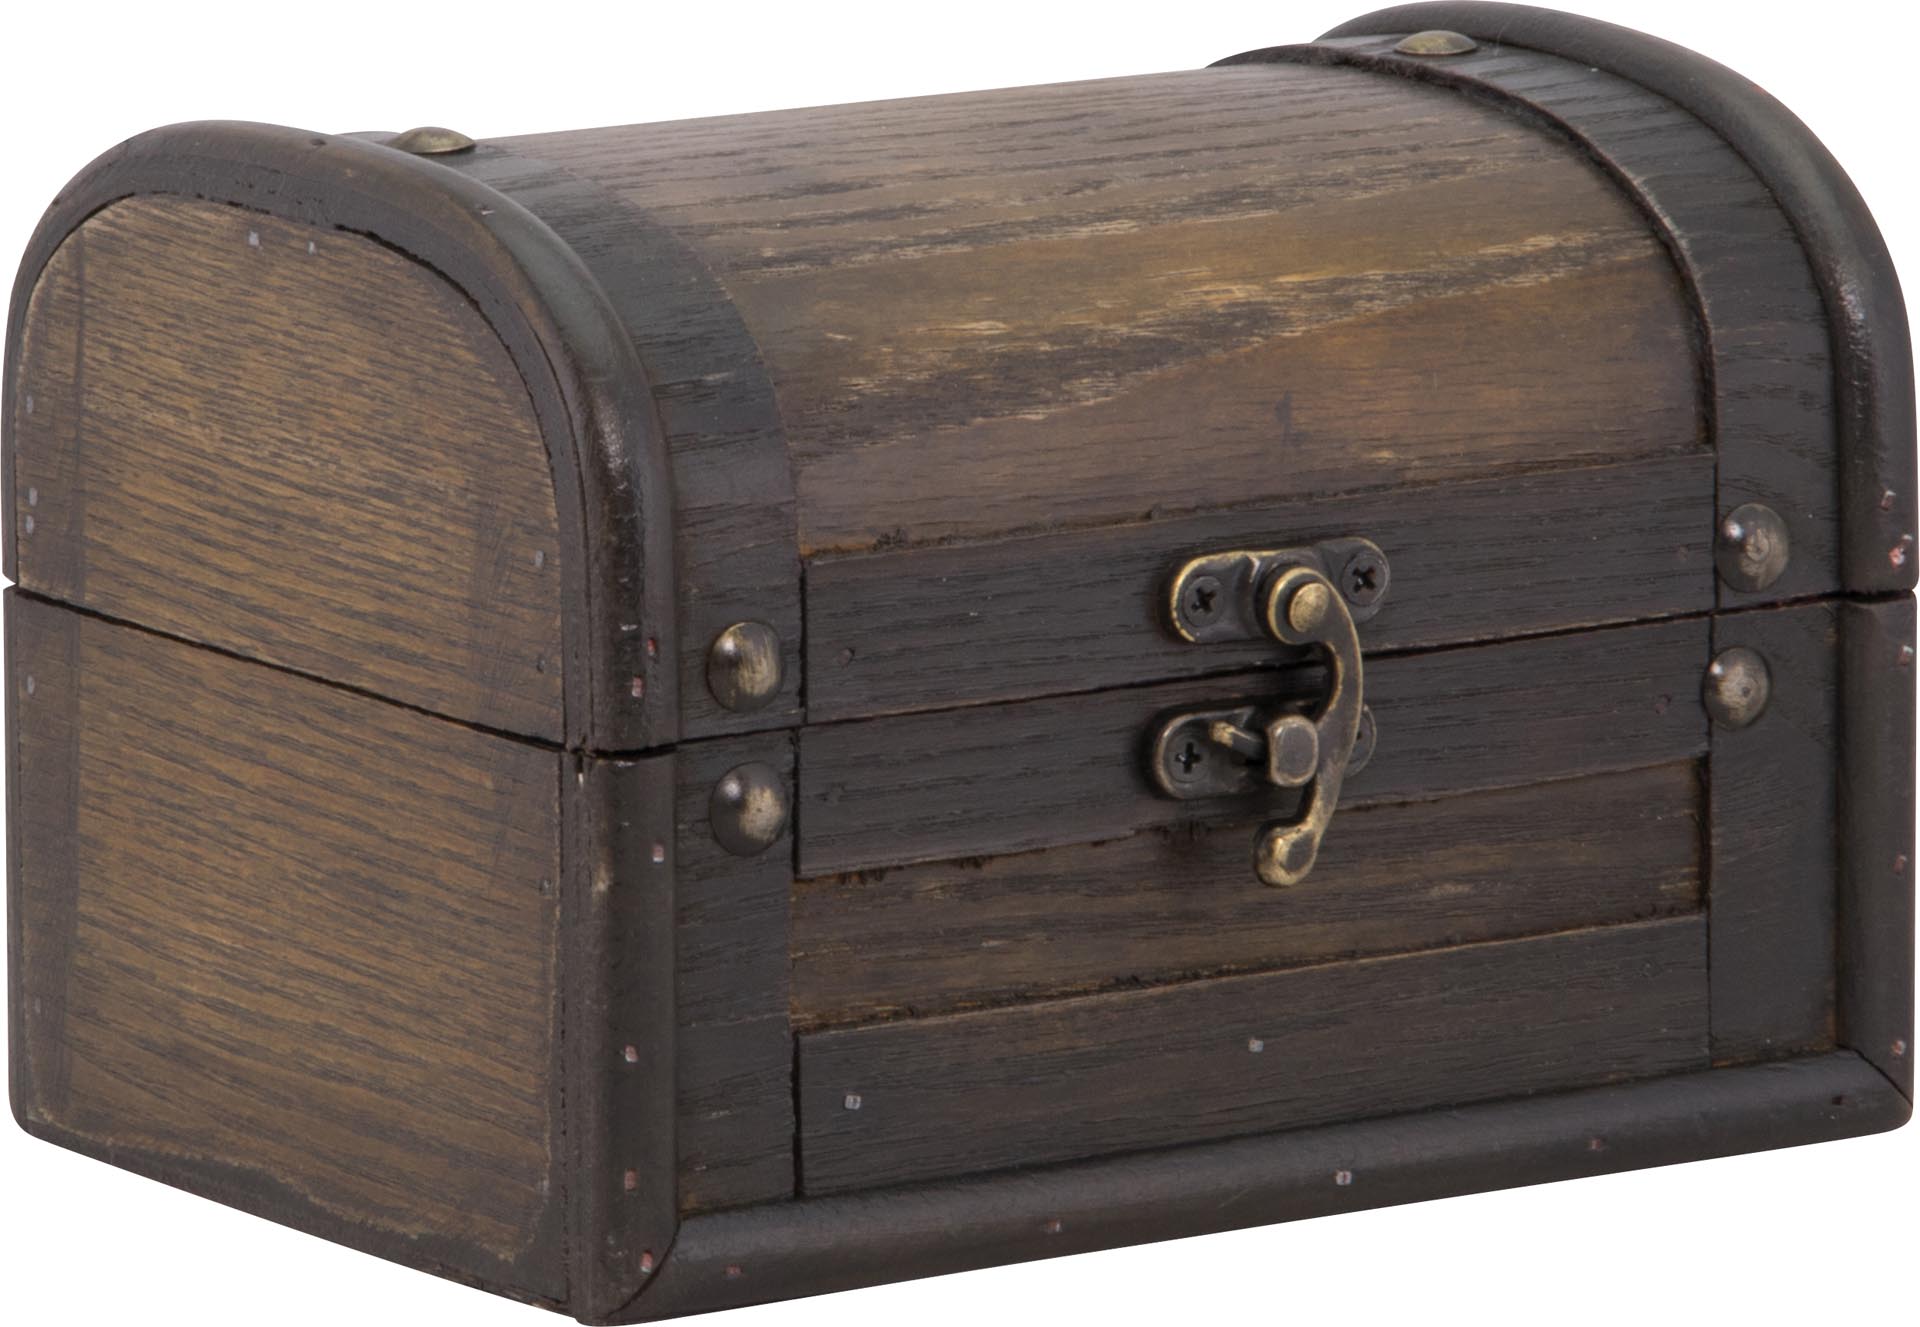 Rechnungsbox ``Holzkiste`` braun 15,8x11,4x11cm